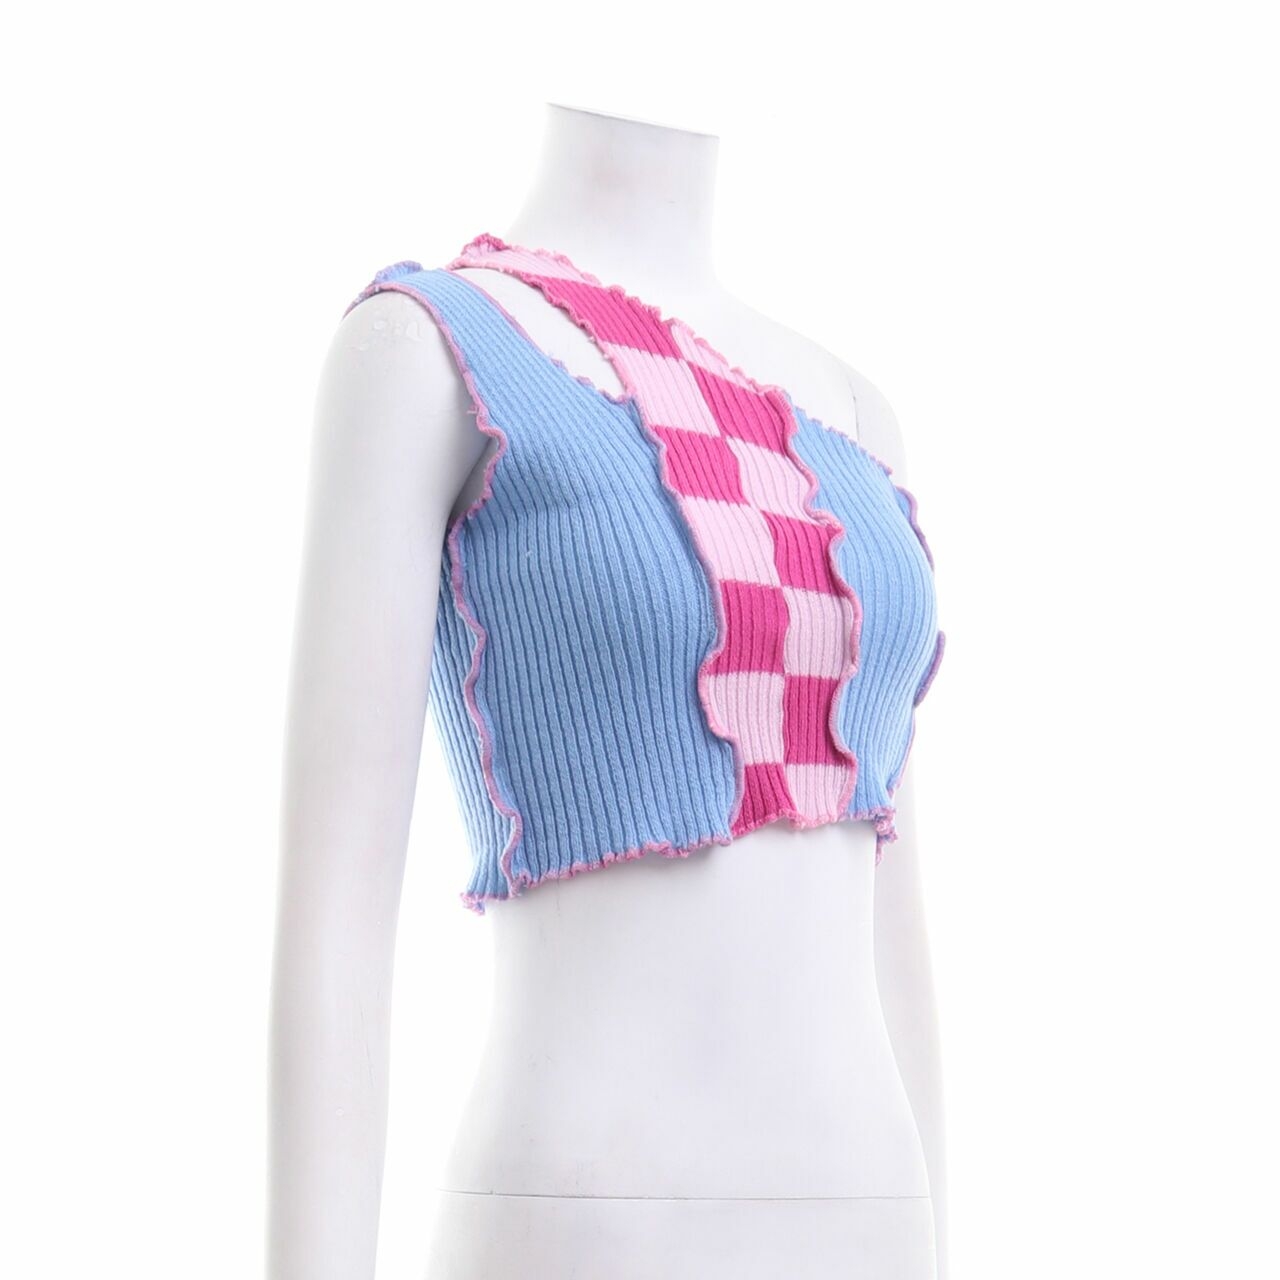 Sassh Blue & Pink Crop Knit Sleeveless